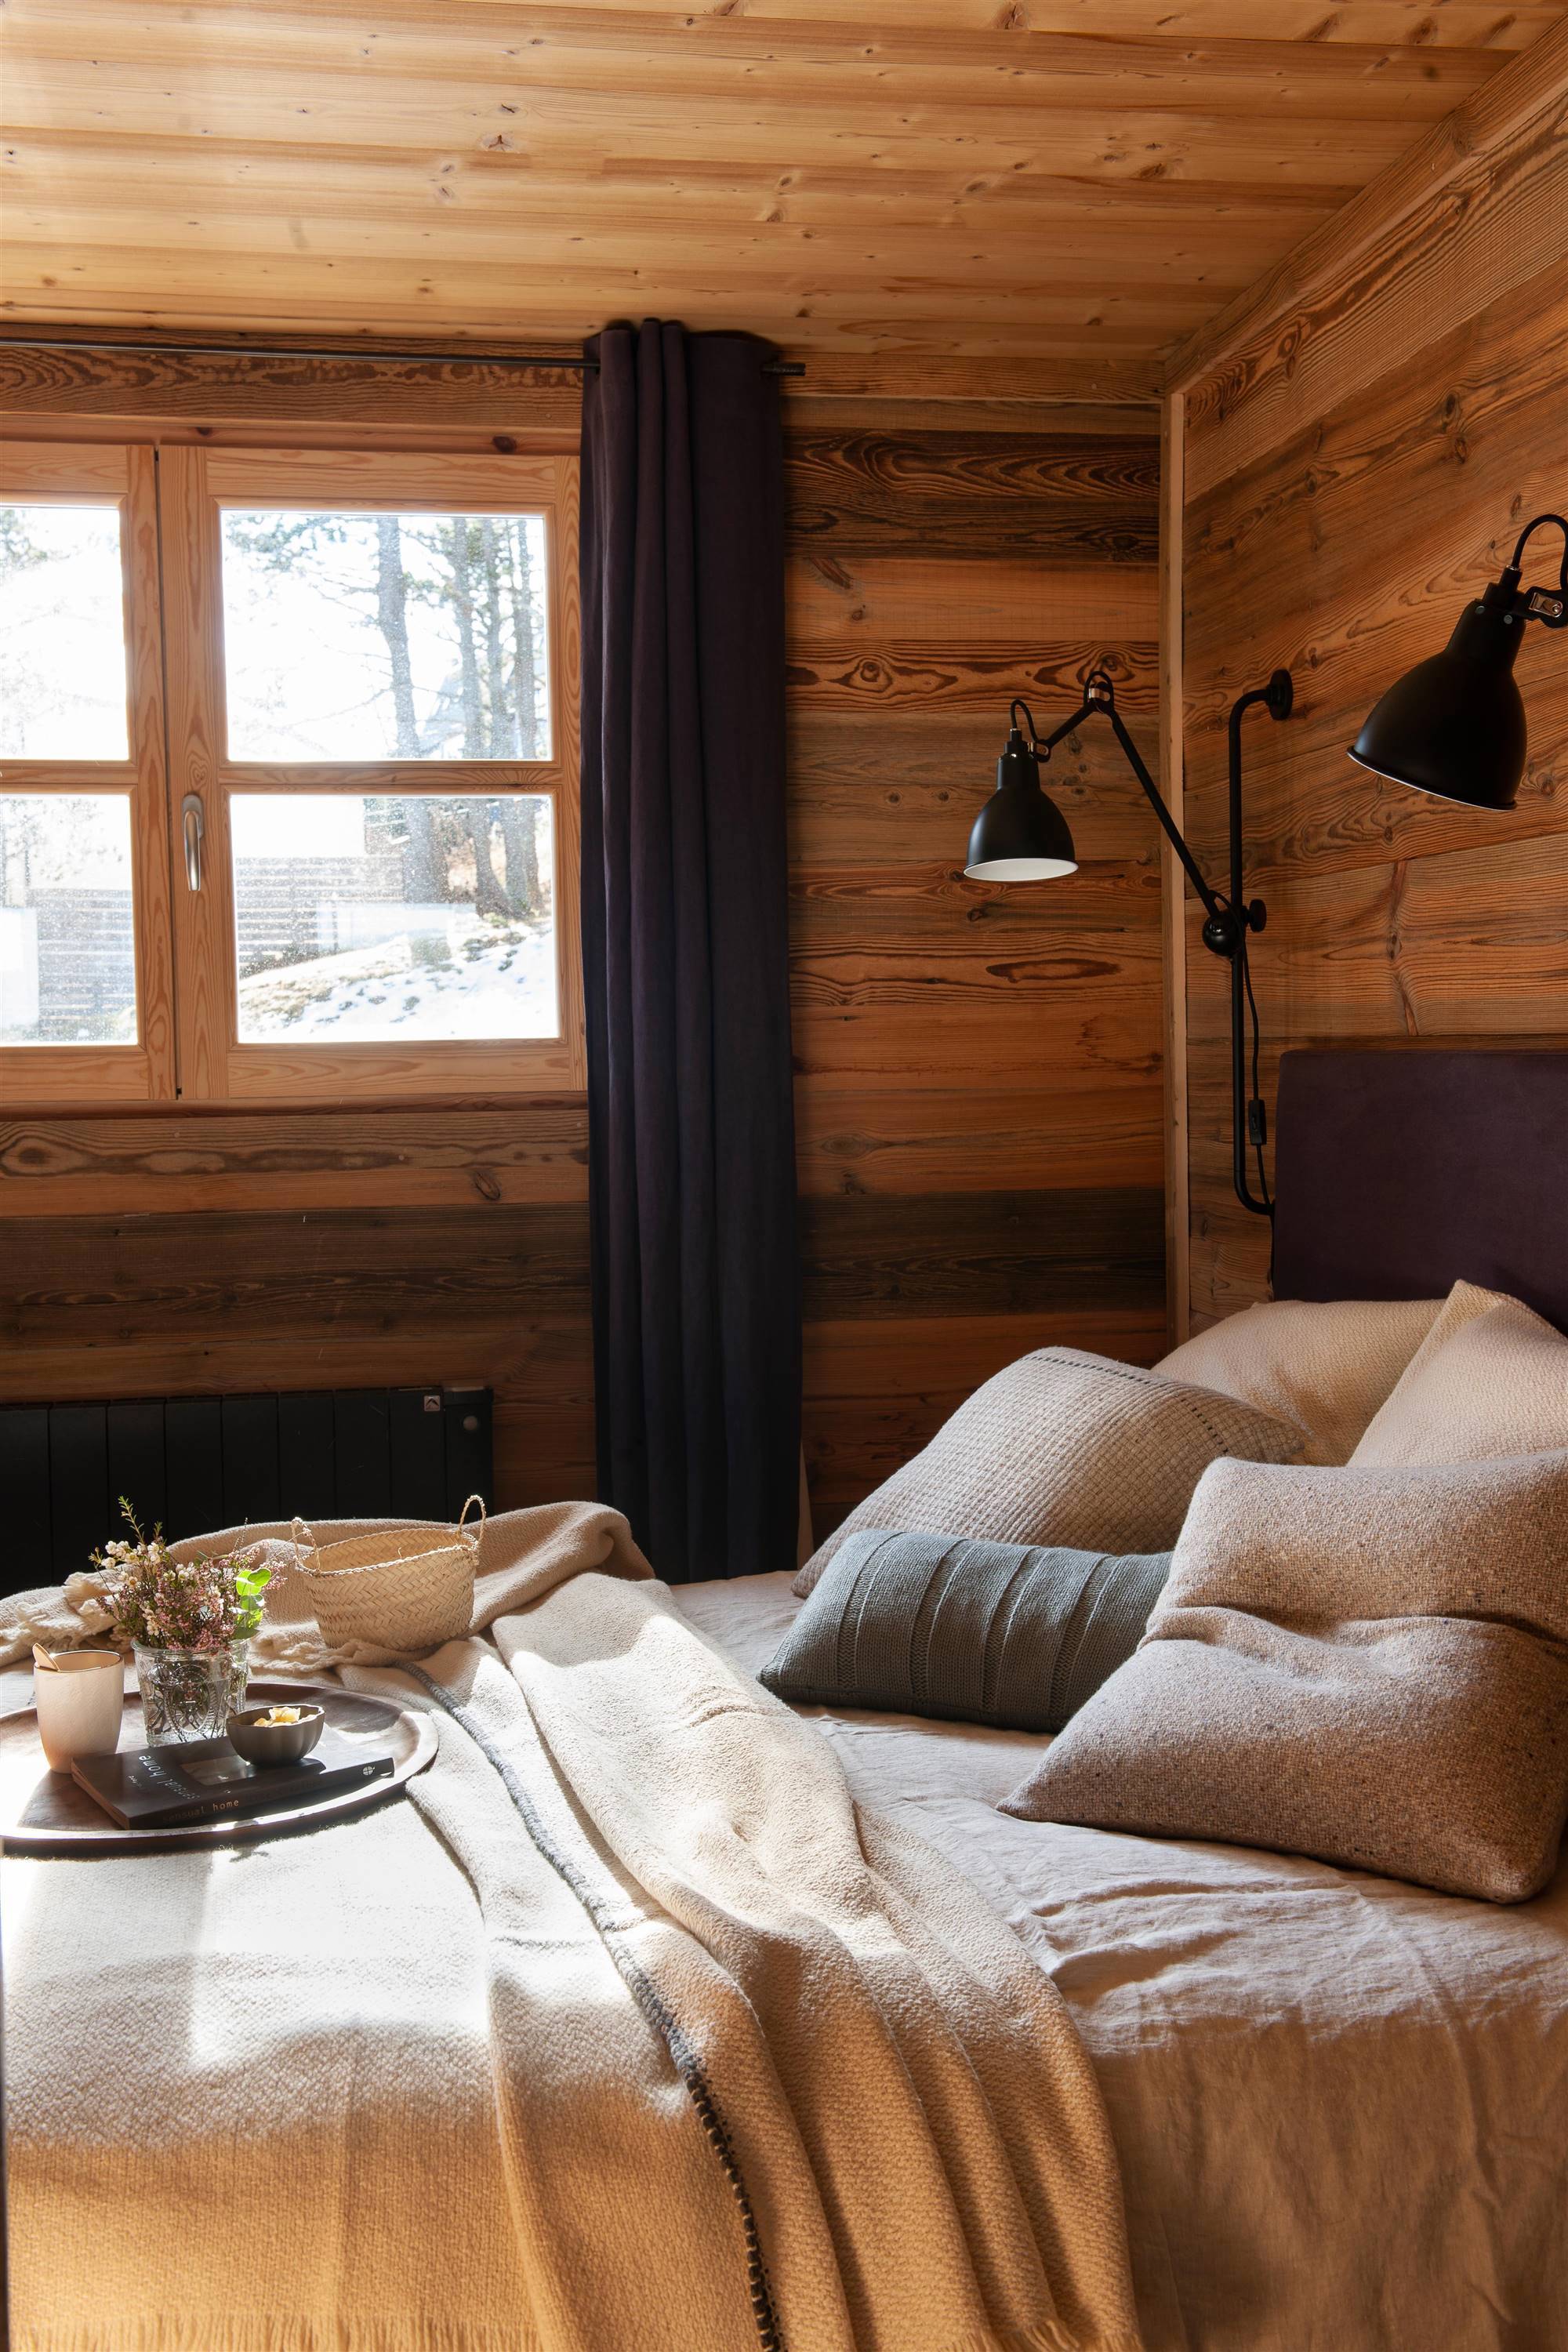 Dormitorio revestido eLn madera con detalles en negro.